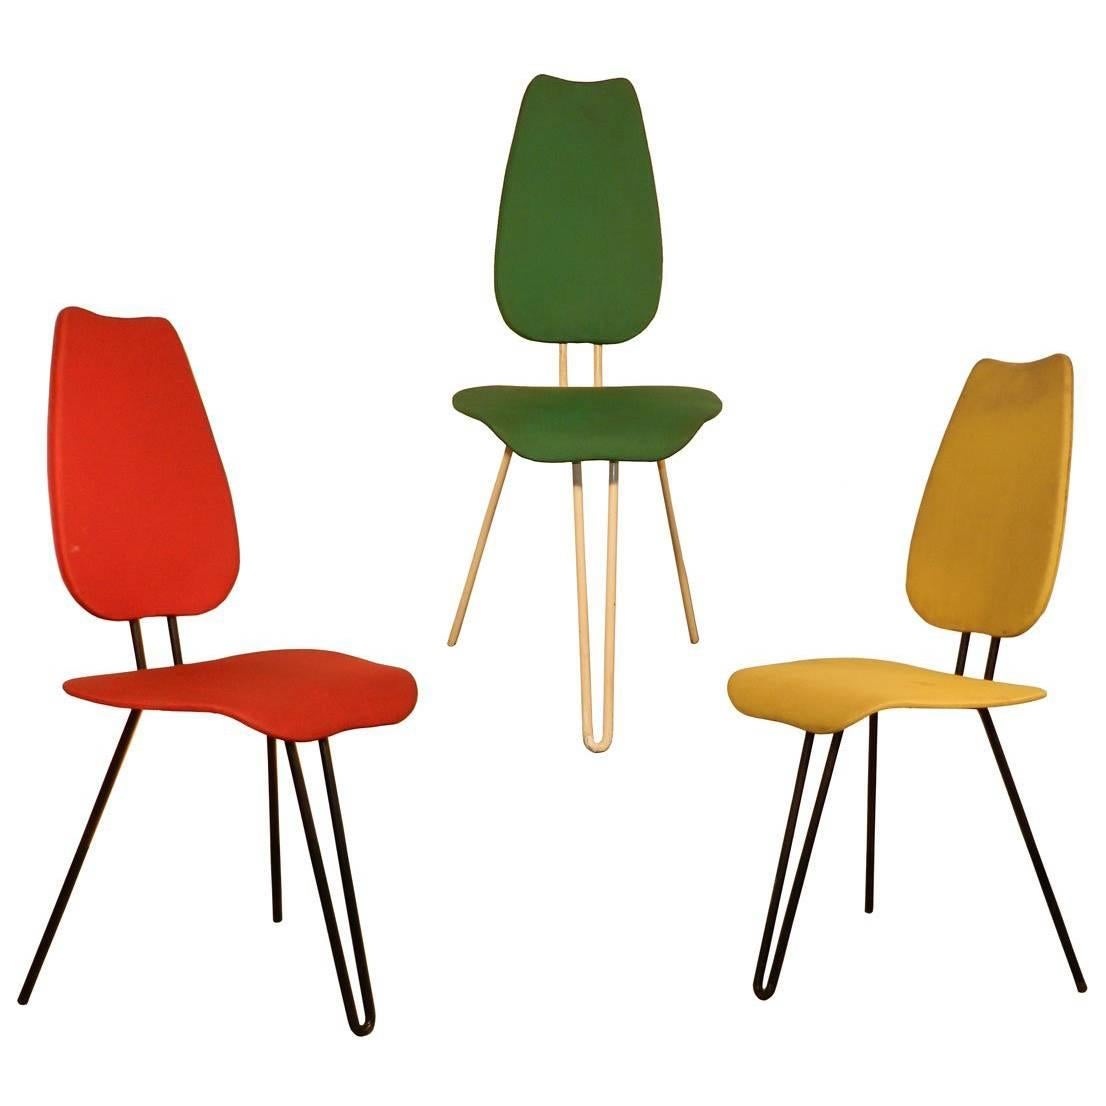 Trois chaises originales vues dans un design de Louis Sognot, datant d'environ 1945-1950